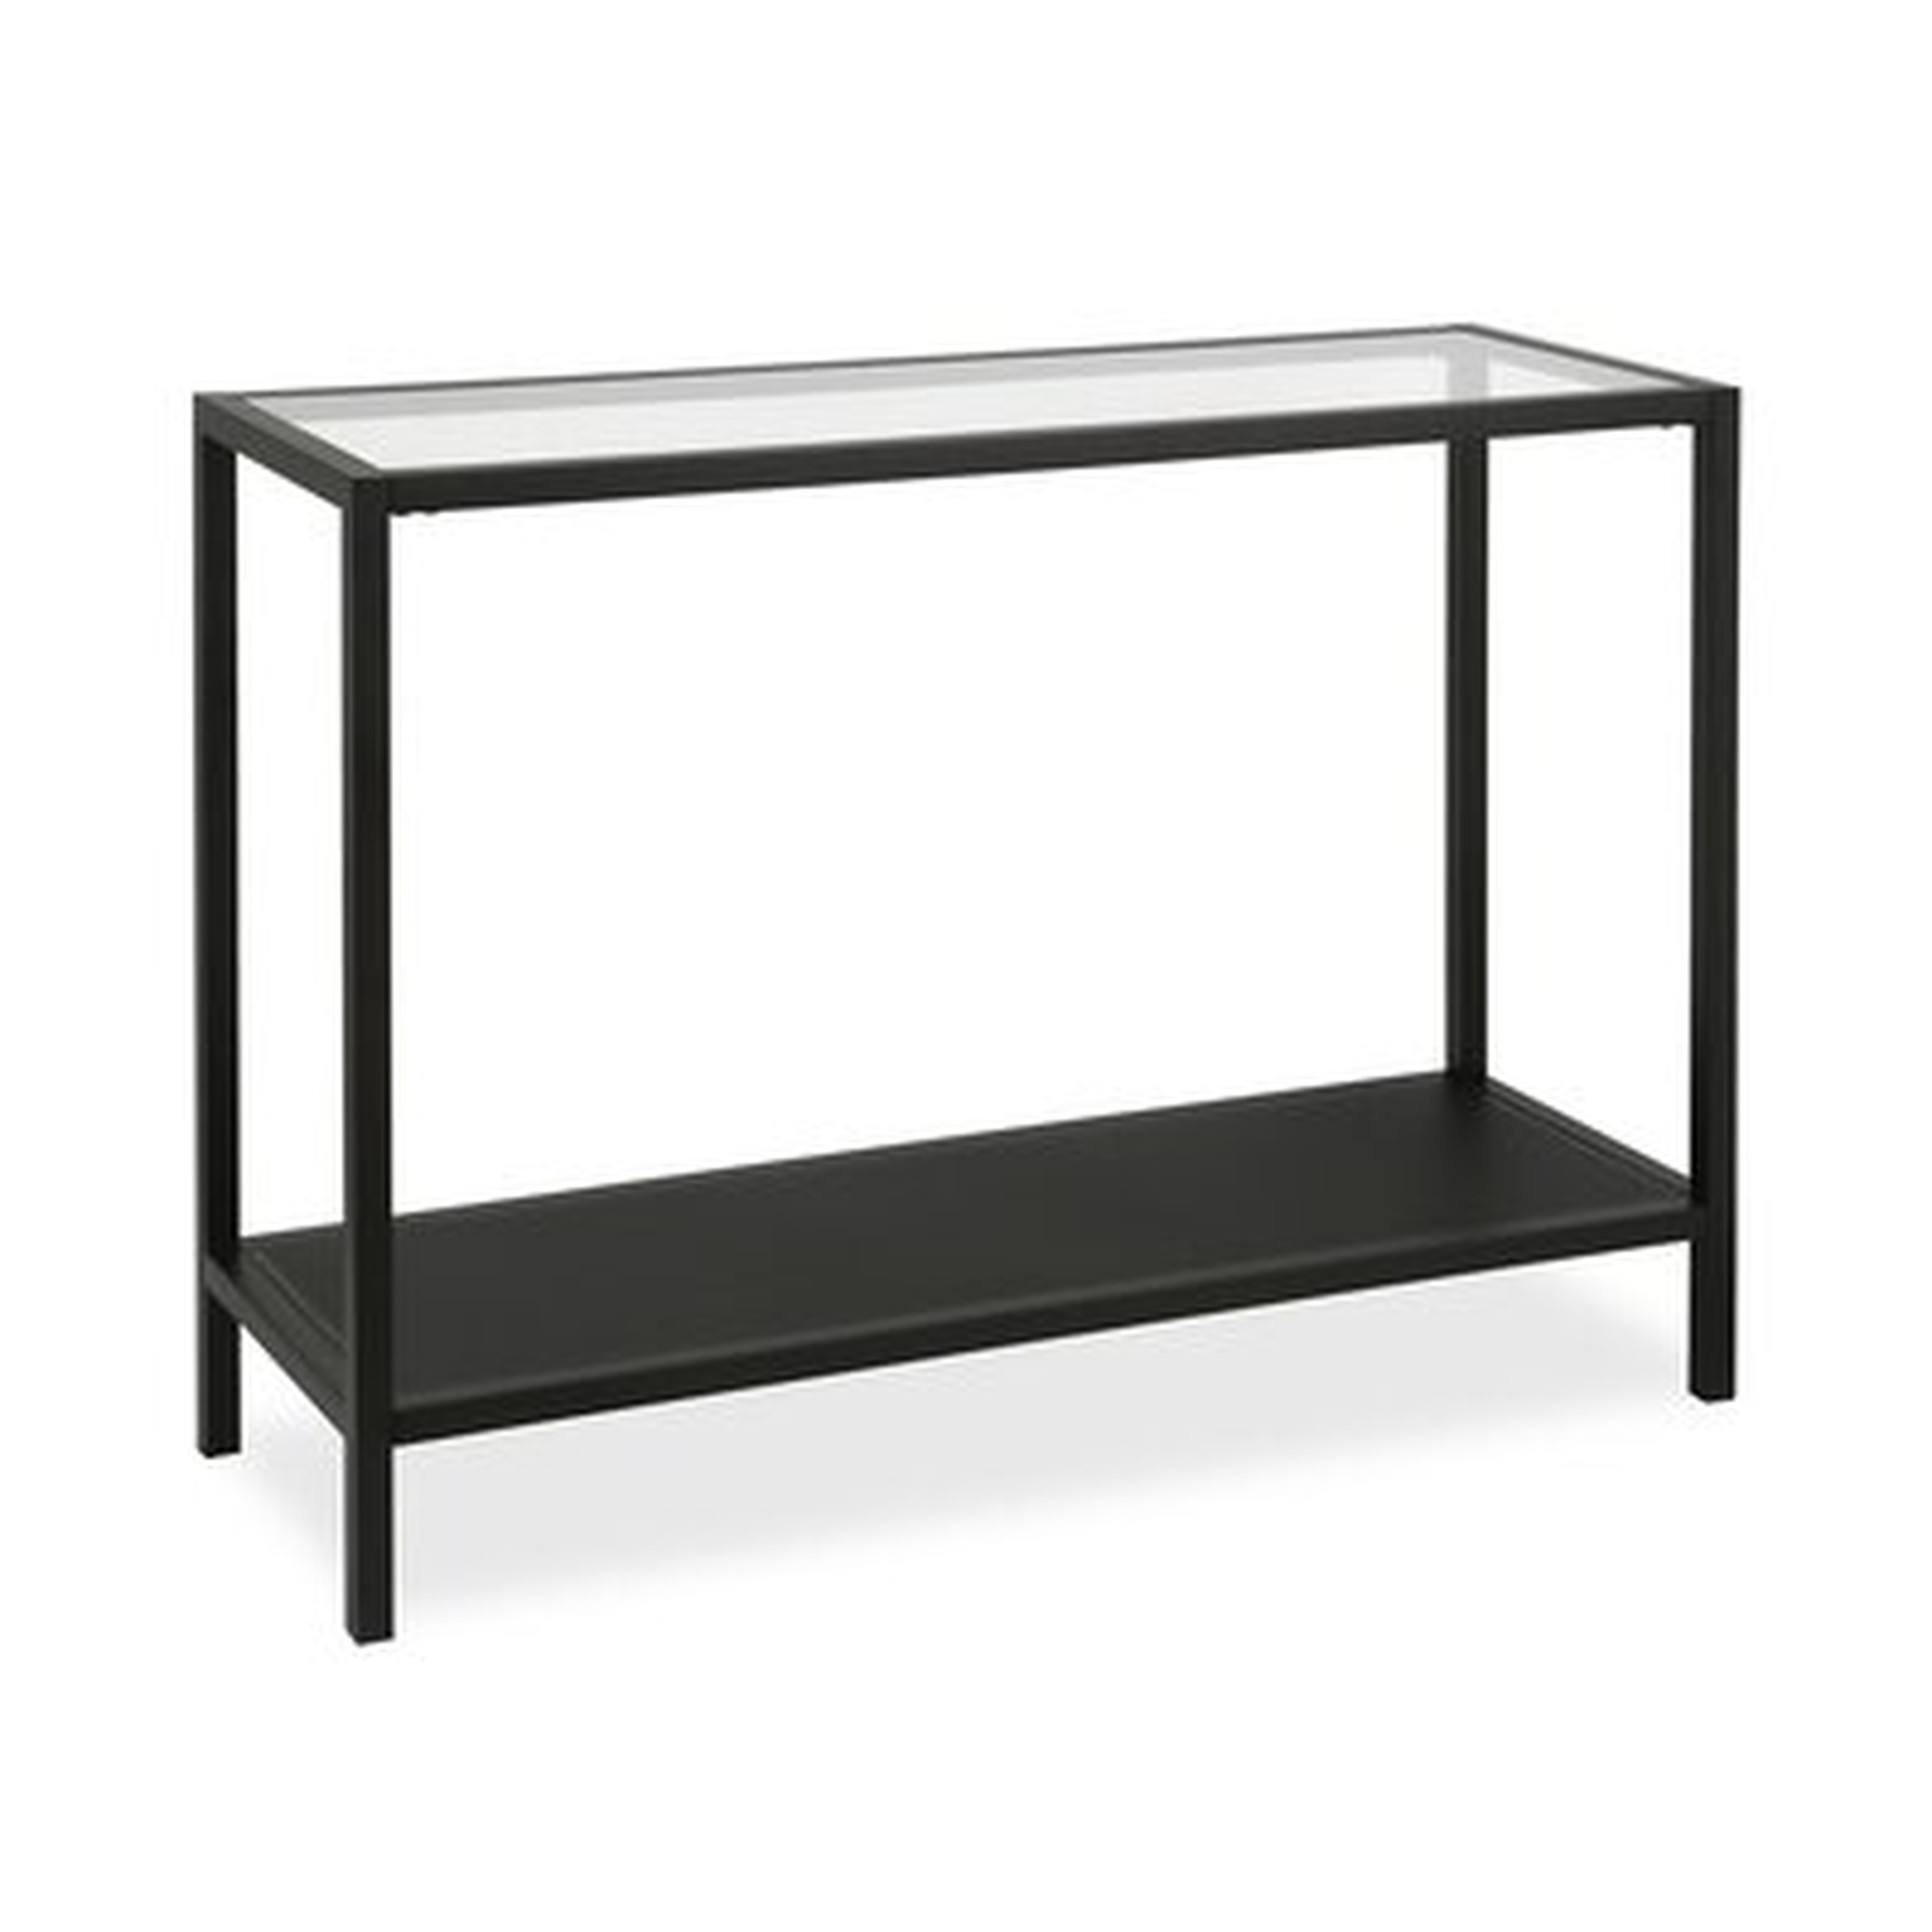 30" H x 36" W x 10" D Black Longmeadow Console Table - Wayfair